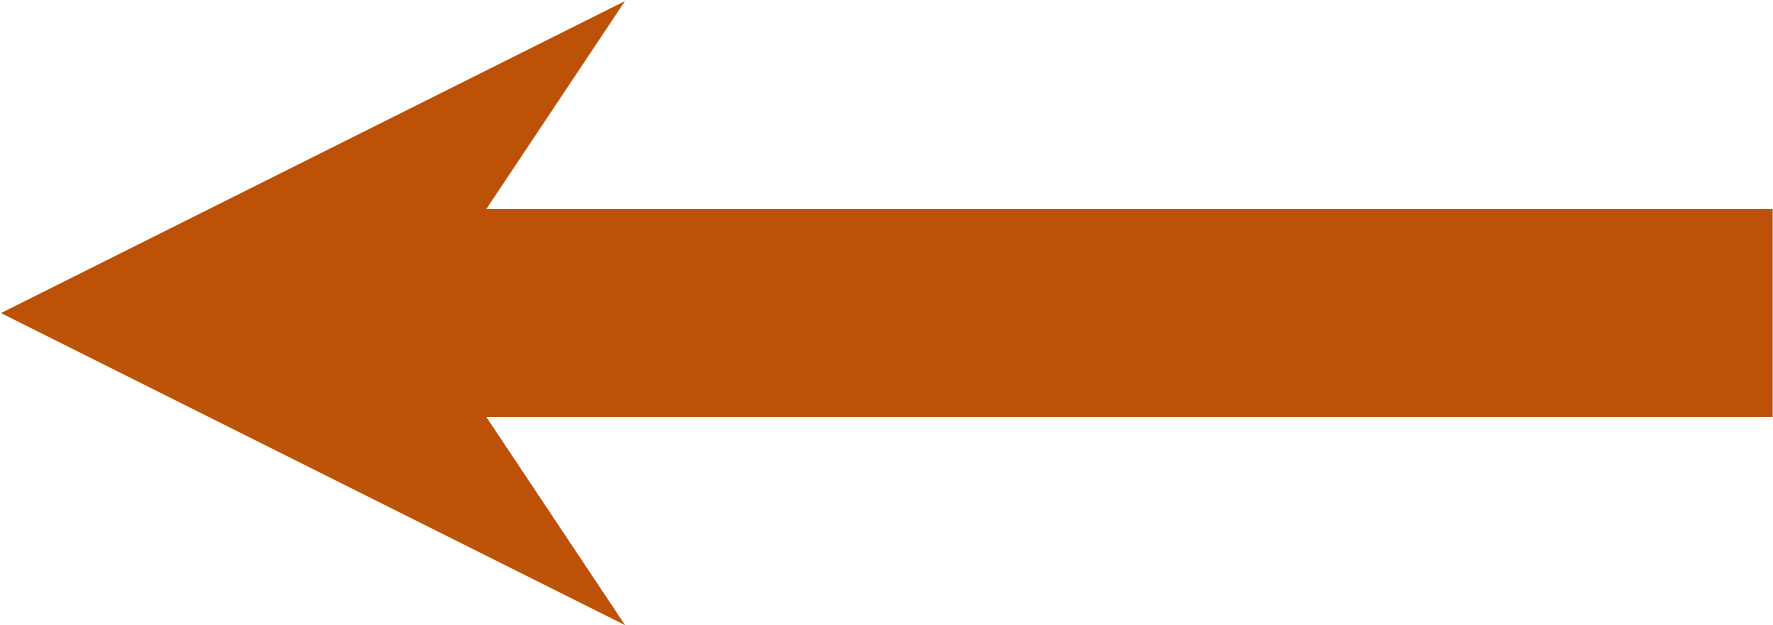 Orange Arrow Png